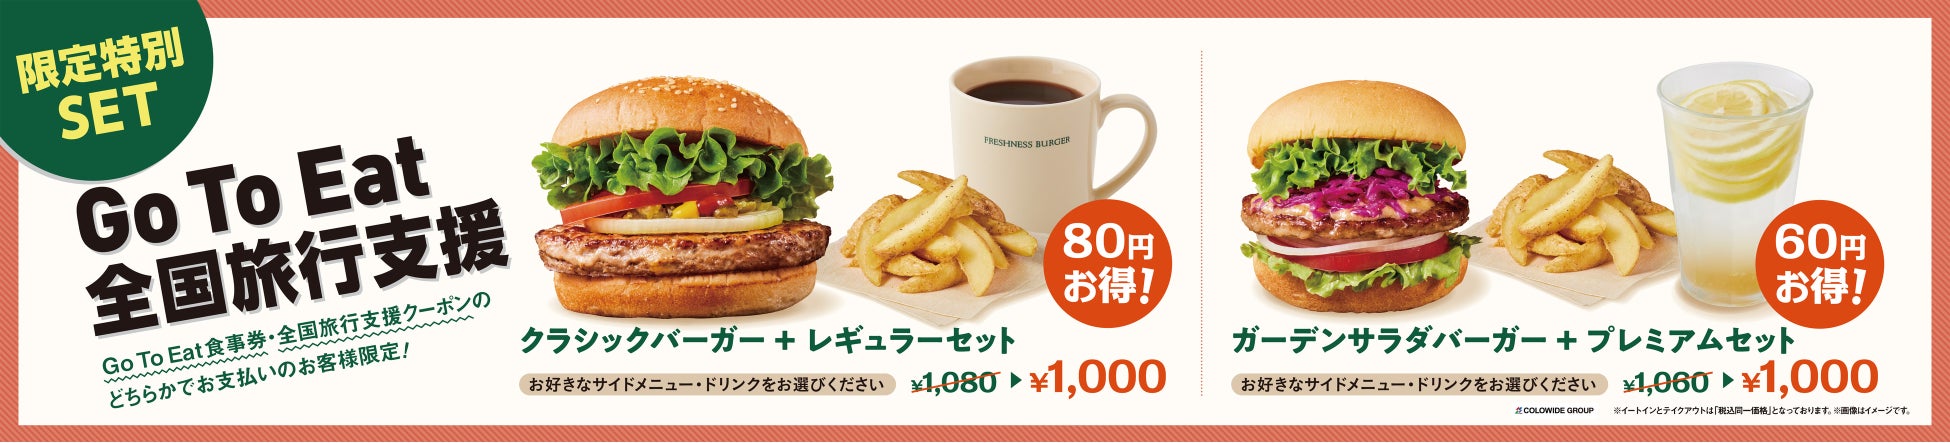 1日5組限定 BANKERS STREET CAFE『秋の石川県産食材とチーズのアフタヌーンティー』